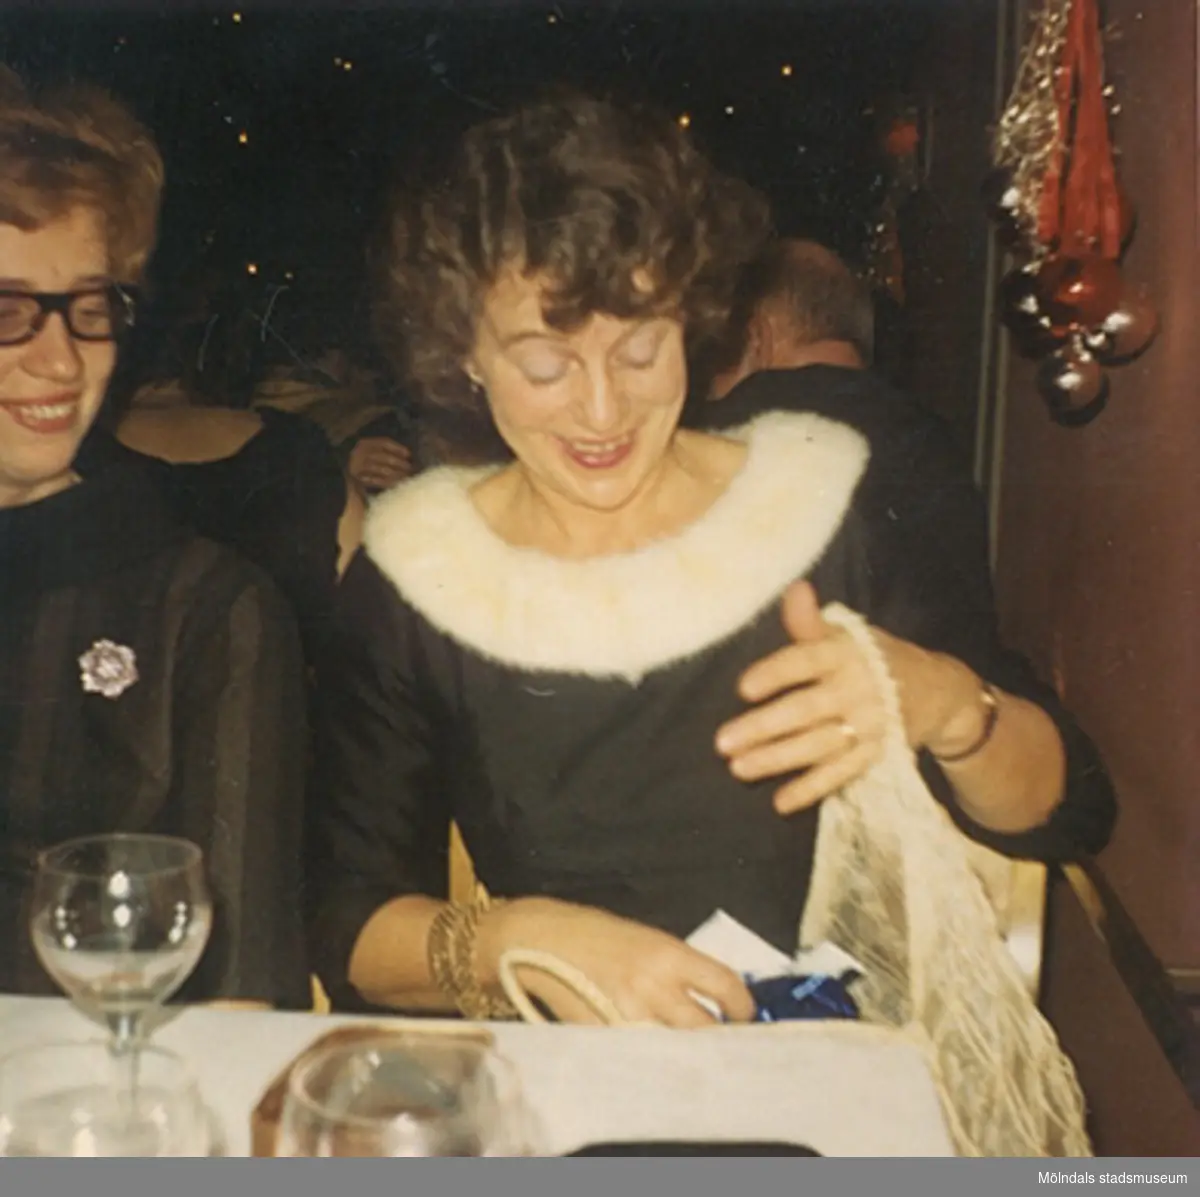 Okänd kvinna till vänster, november 1966. "Den lilla svarta" i sidentyg. Klänningen finns i Mölndals stadsmuseums samlingar med invnr. 03349.